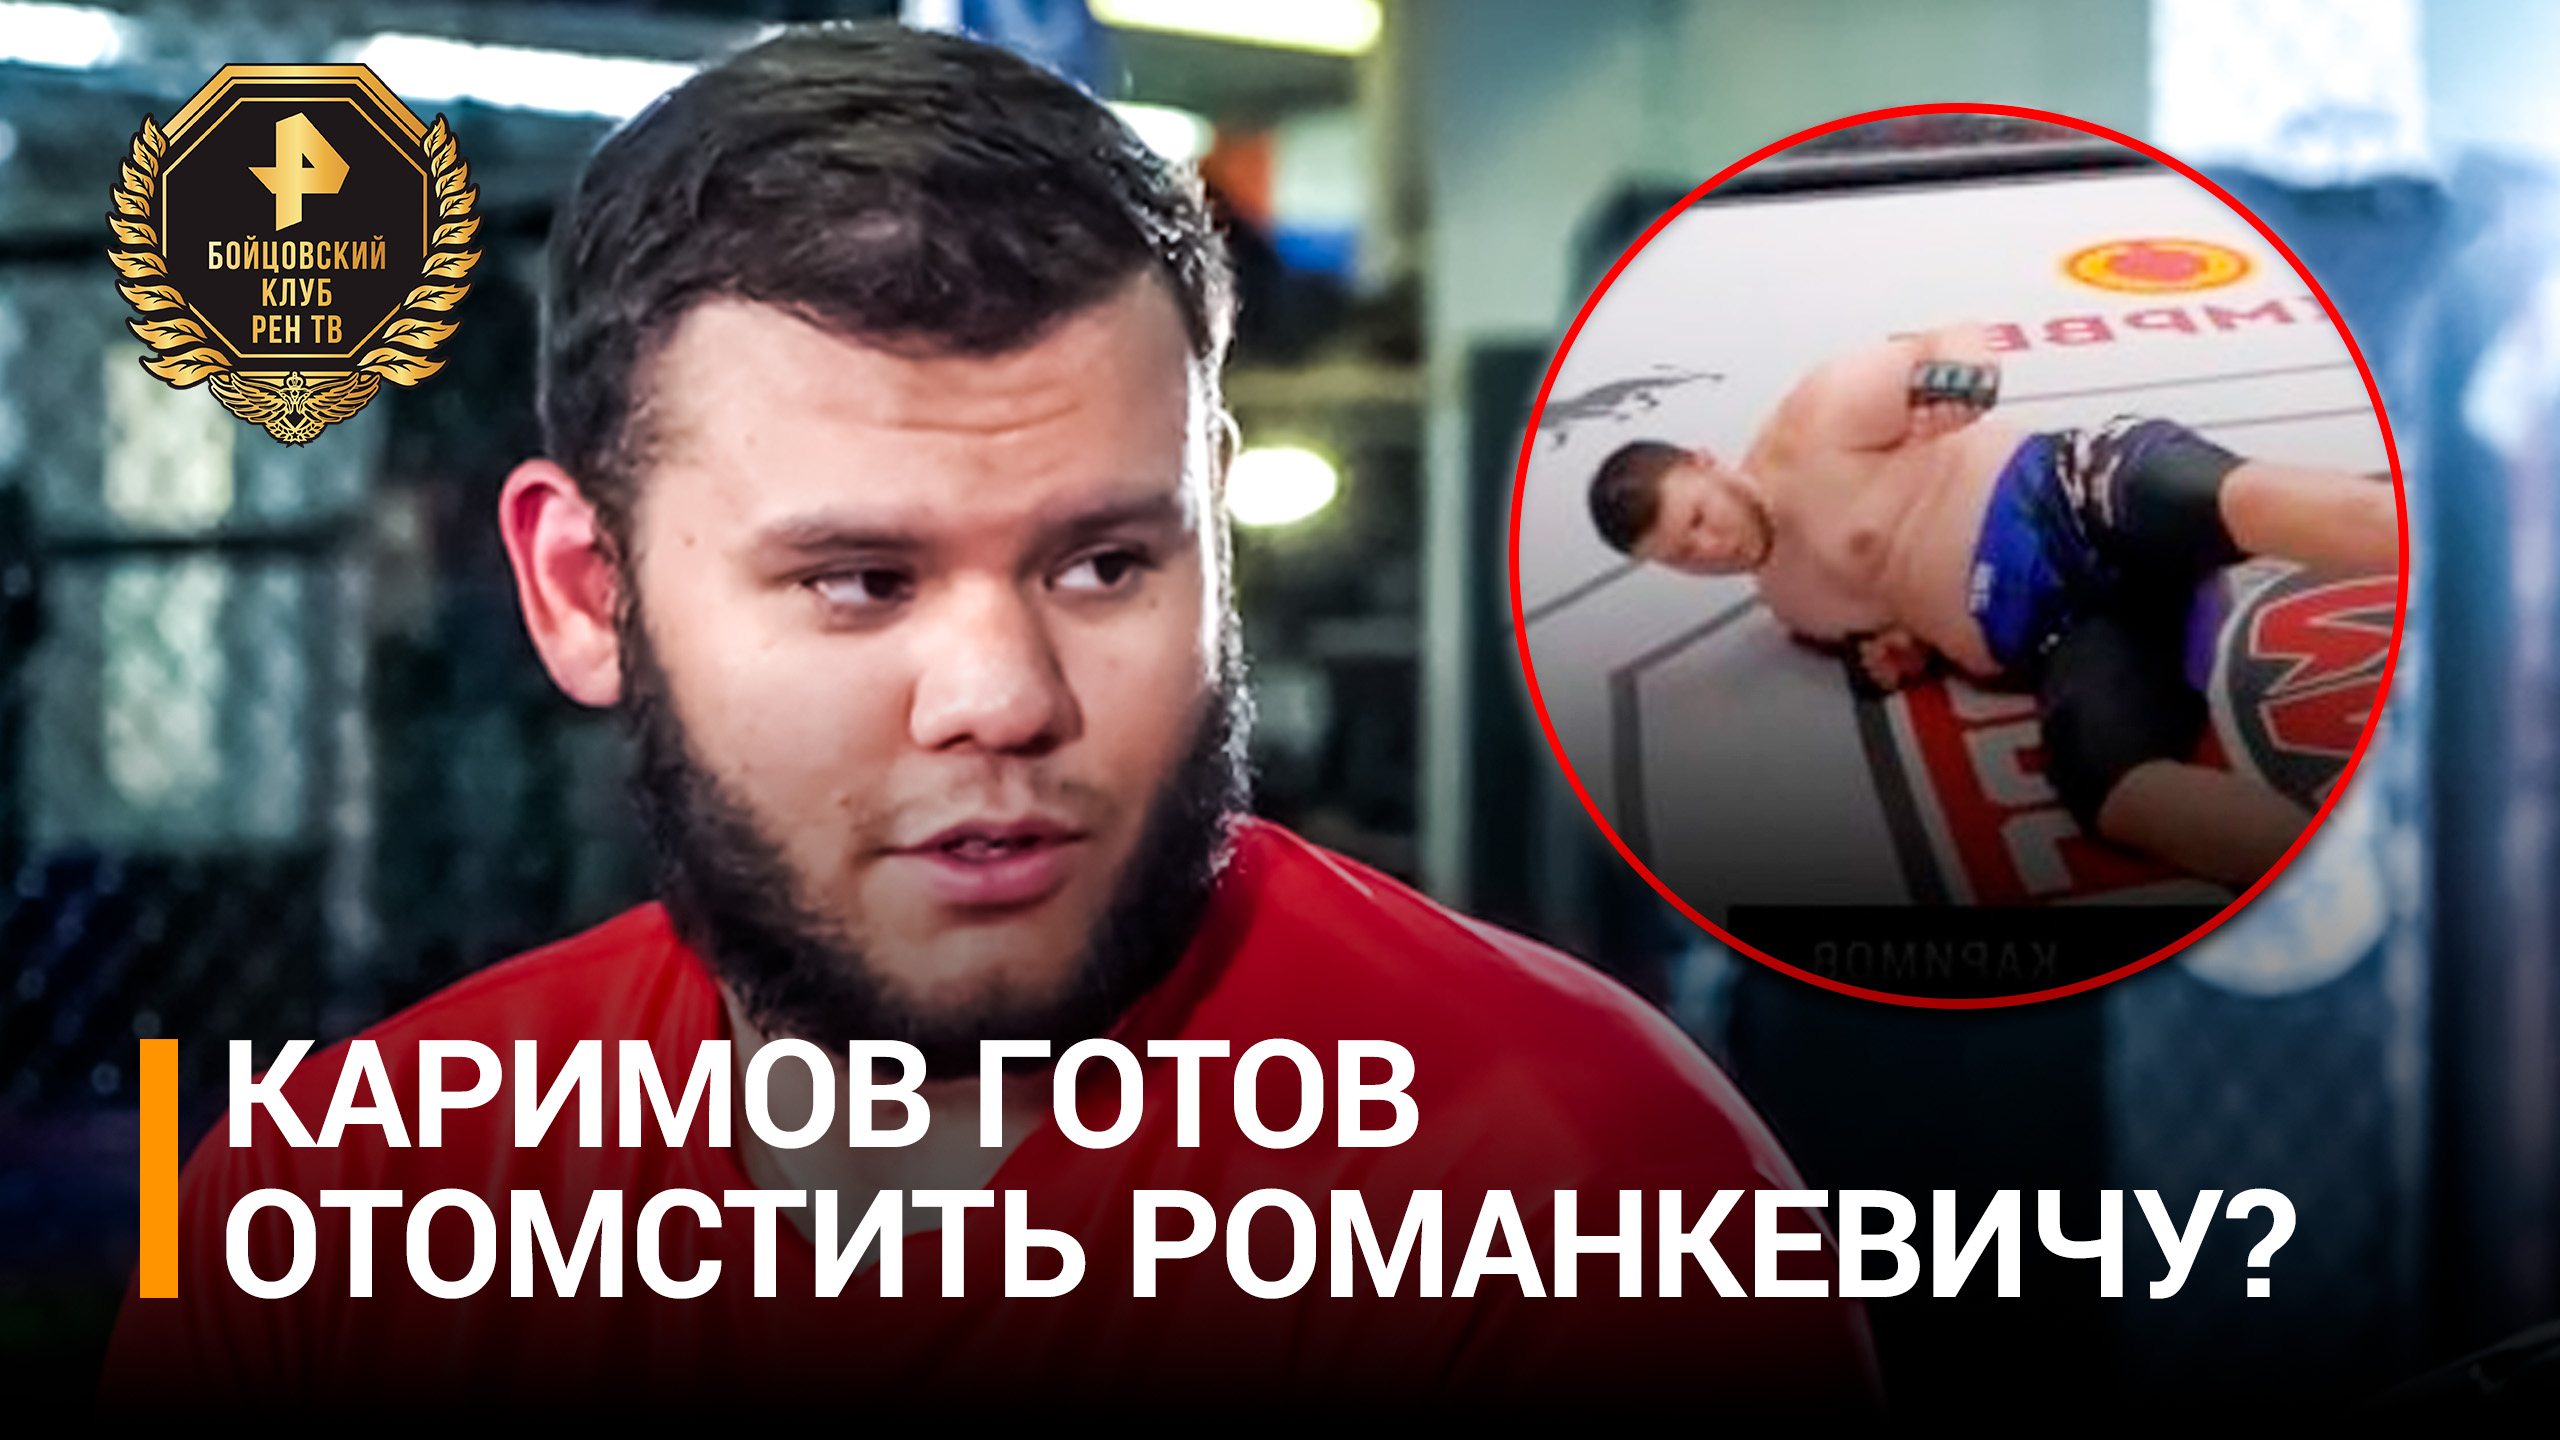 Каримов заявил о желании избивать Романкевича все раунды / Бойцовский клуб РЕН